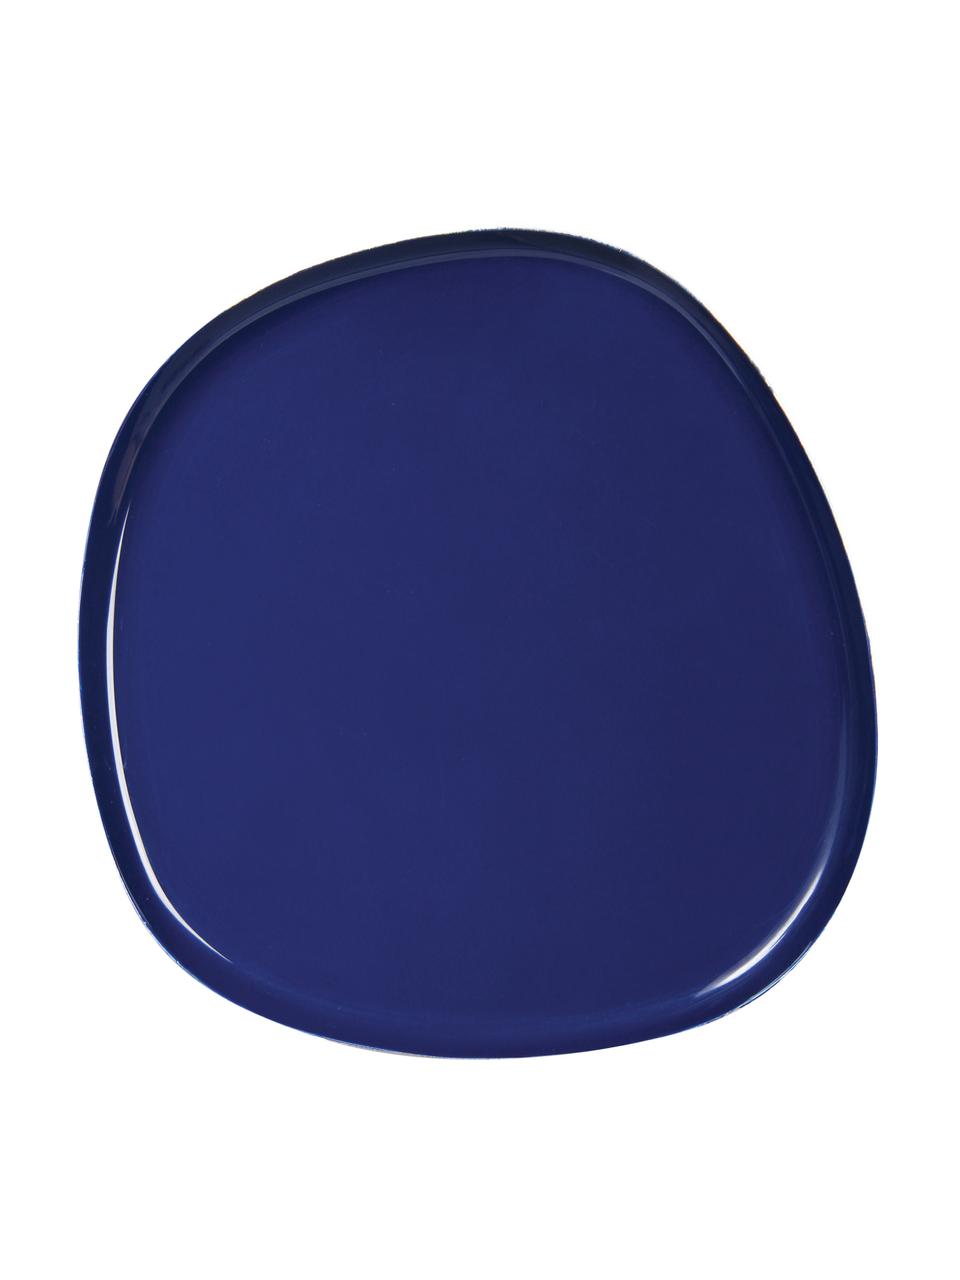 Taca dekoracyjna z metalu Imperfect, Metal powlekany, Ciemny niebieski, S 13 x G 13 cm